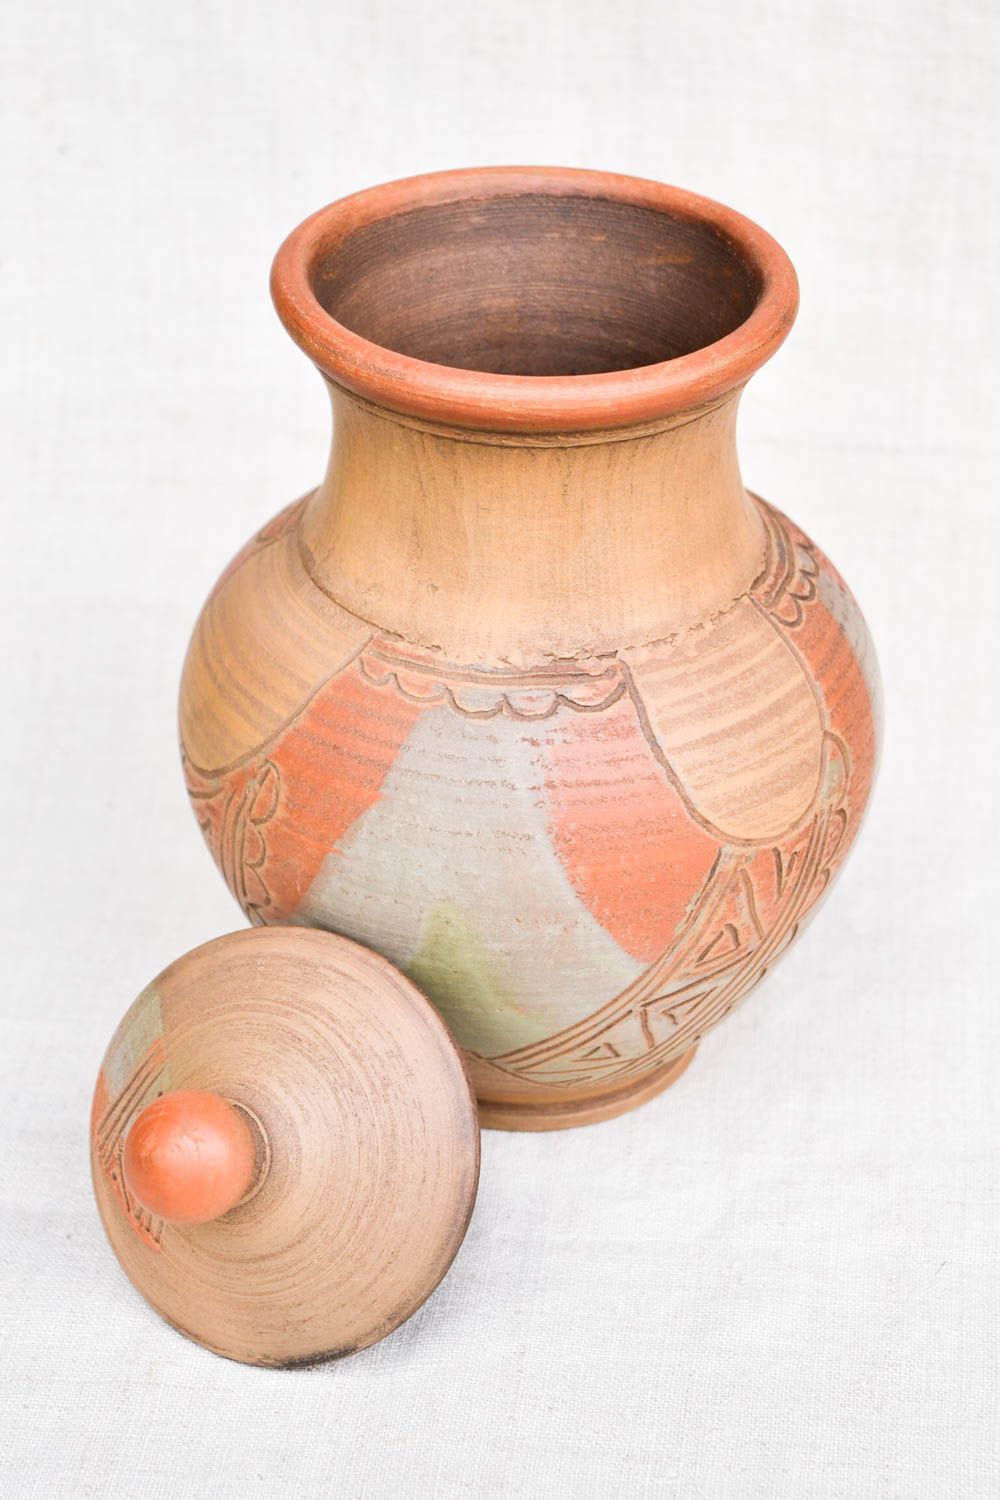 60 oz handmade ceramic milk pitcher in ethnic design 1,65 lb photo 3